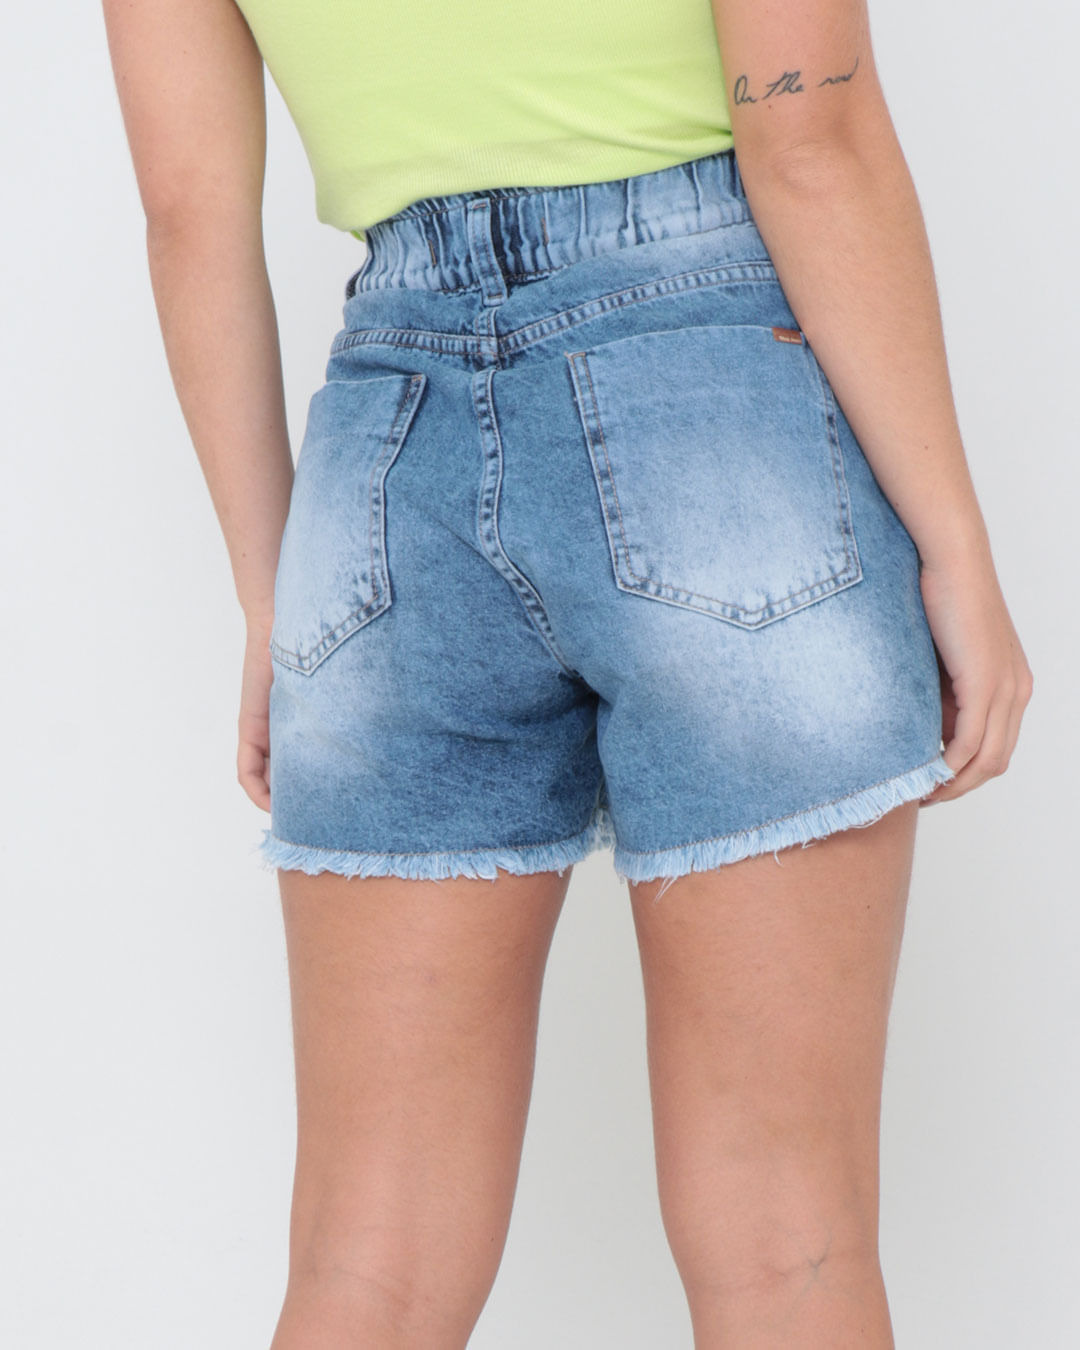 Short-Jeans-Feminino-Cintura-Alta-Marmorizado-Azul-Claro